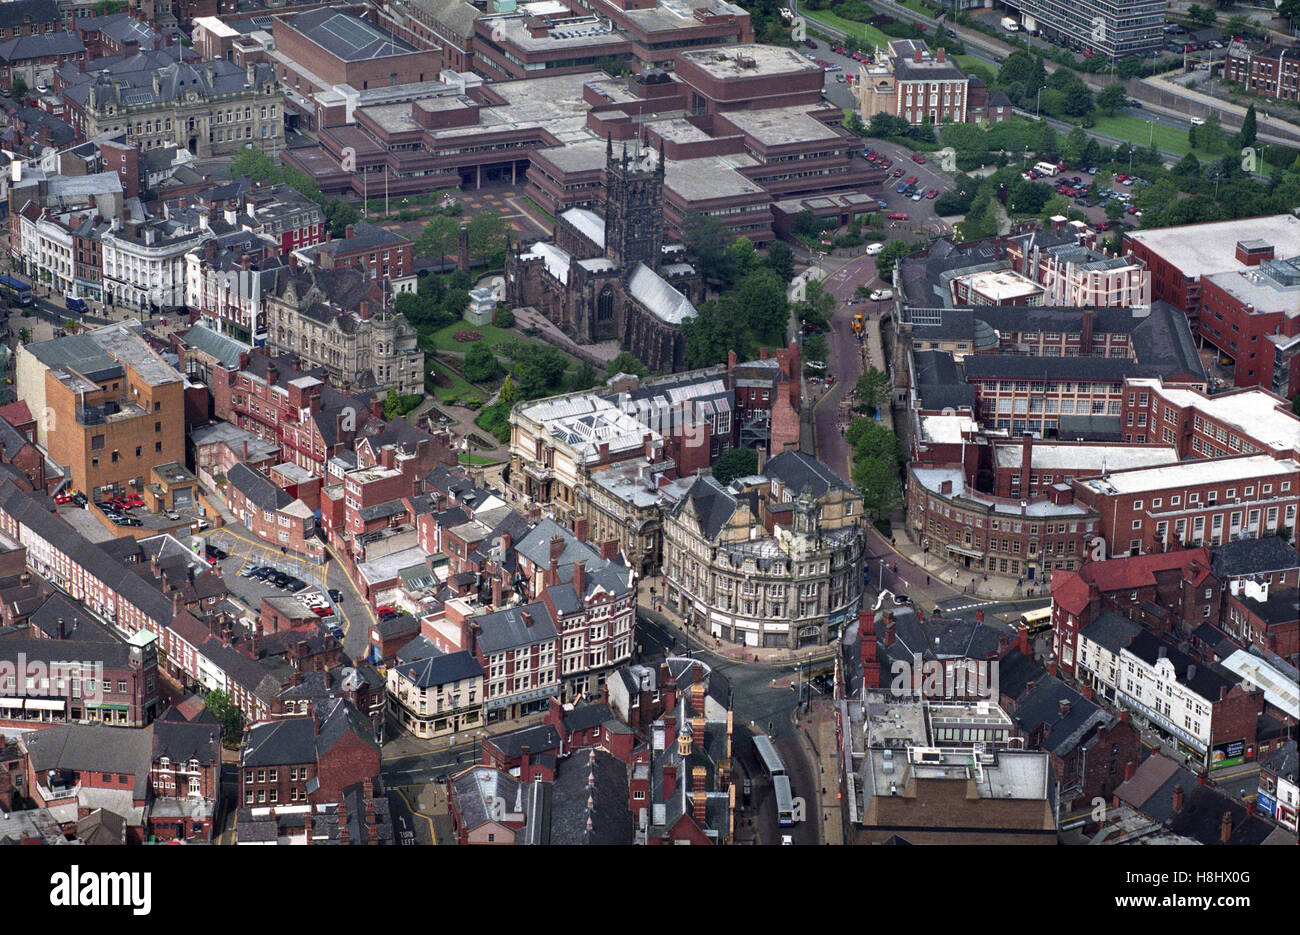 Eine Luftaufnahme des Stadtzentrum von Wolverhampton am Zusammenfluss von Lichfield Street und Stafford St England Uk 09.09.92 Stockfoto